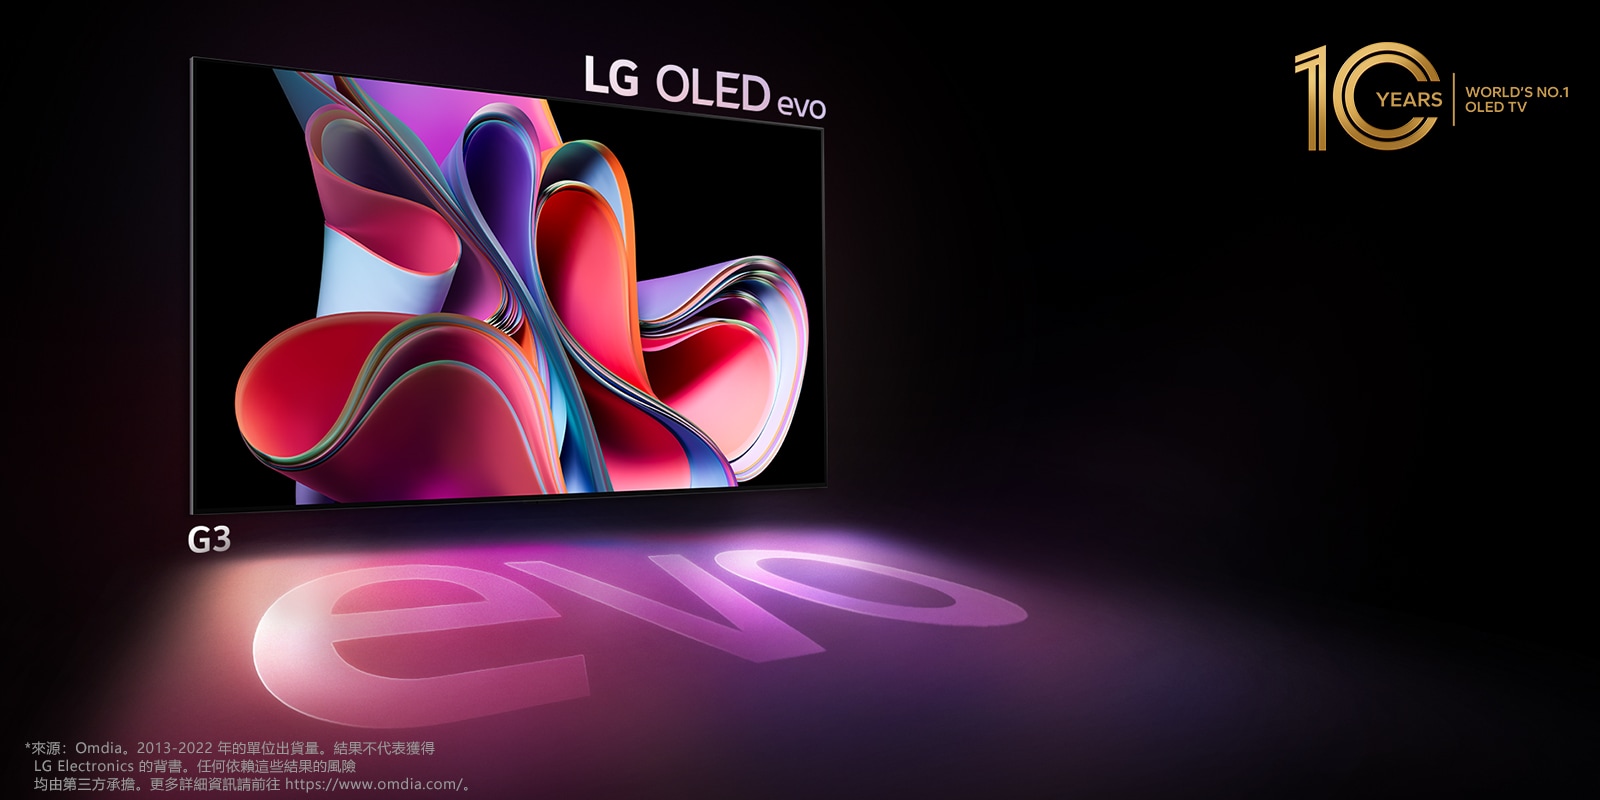 圖片顯示 LG OLED G3 搭配黑色背景，上面顯示著亮粉紅和紫色的抽象藝術作品。顯示螢幕投射出帶有「evo」字樣的彩色陰影。圖片左上角有「10 年全球第一的 OLED 電視」之徽章標誌。